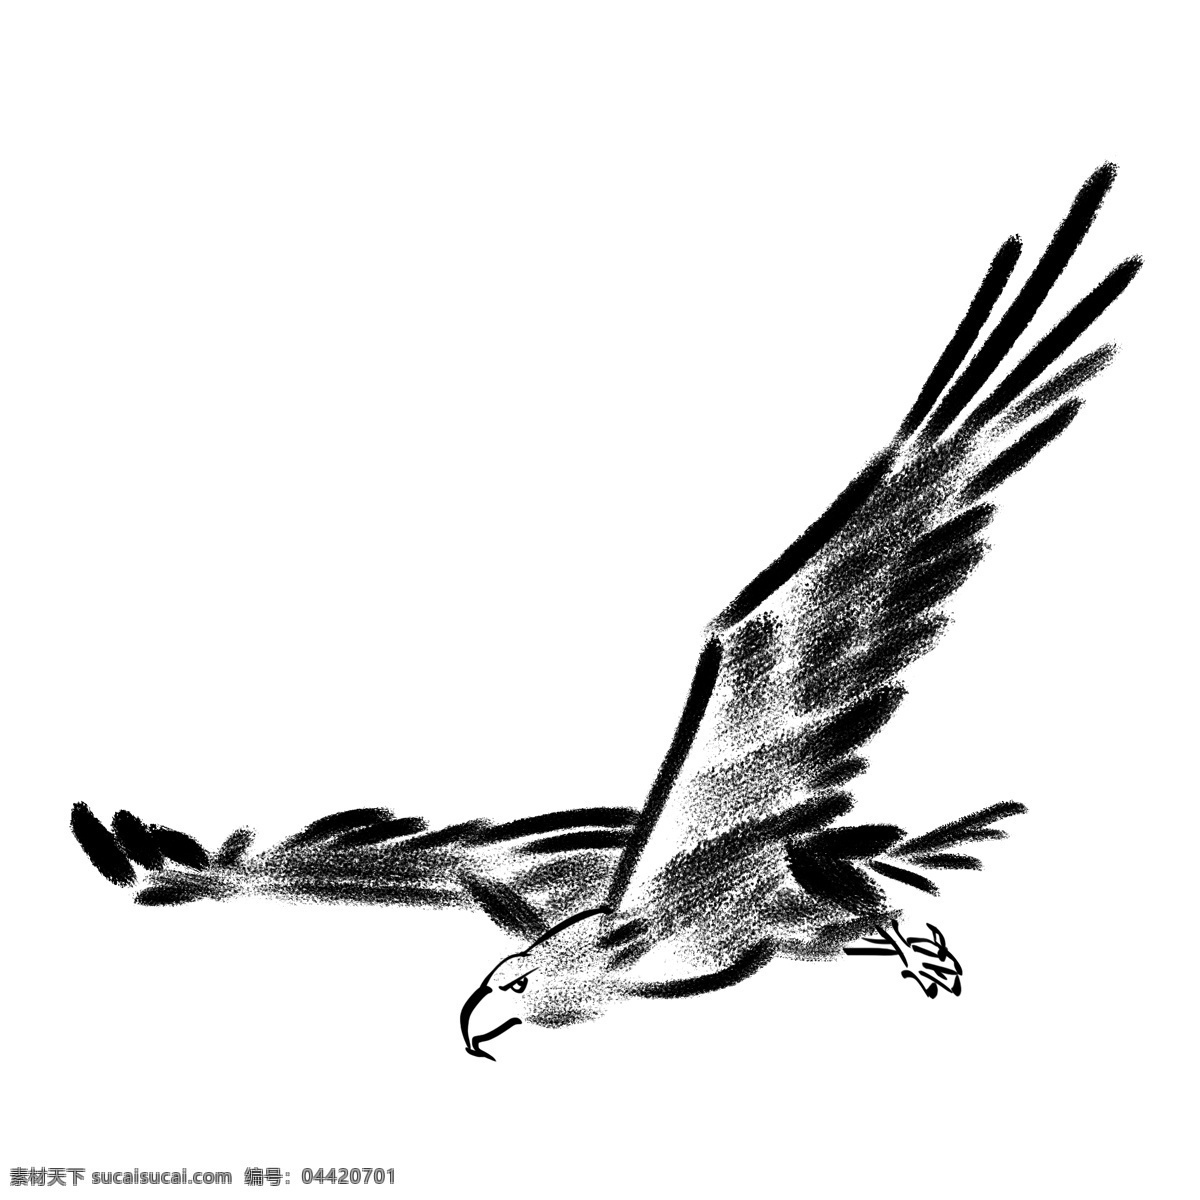 水墨 老鹰 飞翔 插画 鹰 飞翔的老鹰 企业精神 鸟 动物 秃鹫 中国风 墨迹 水墨插画